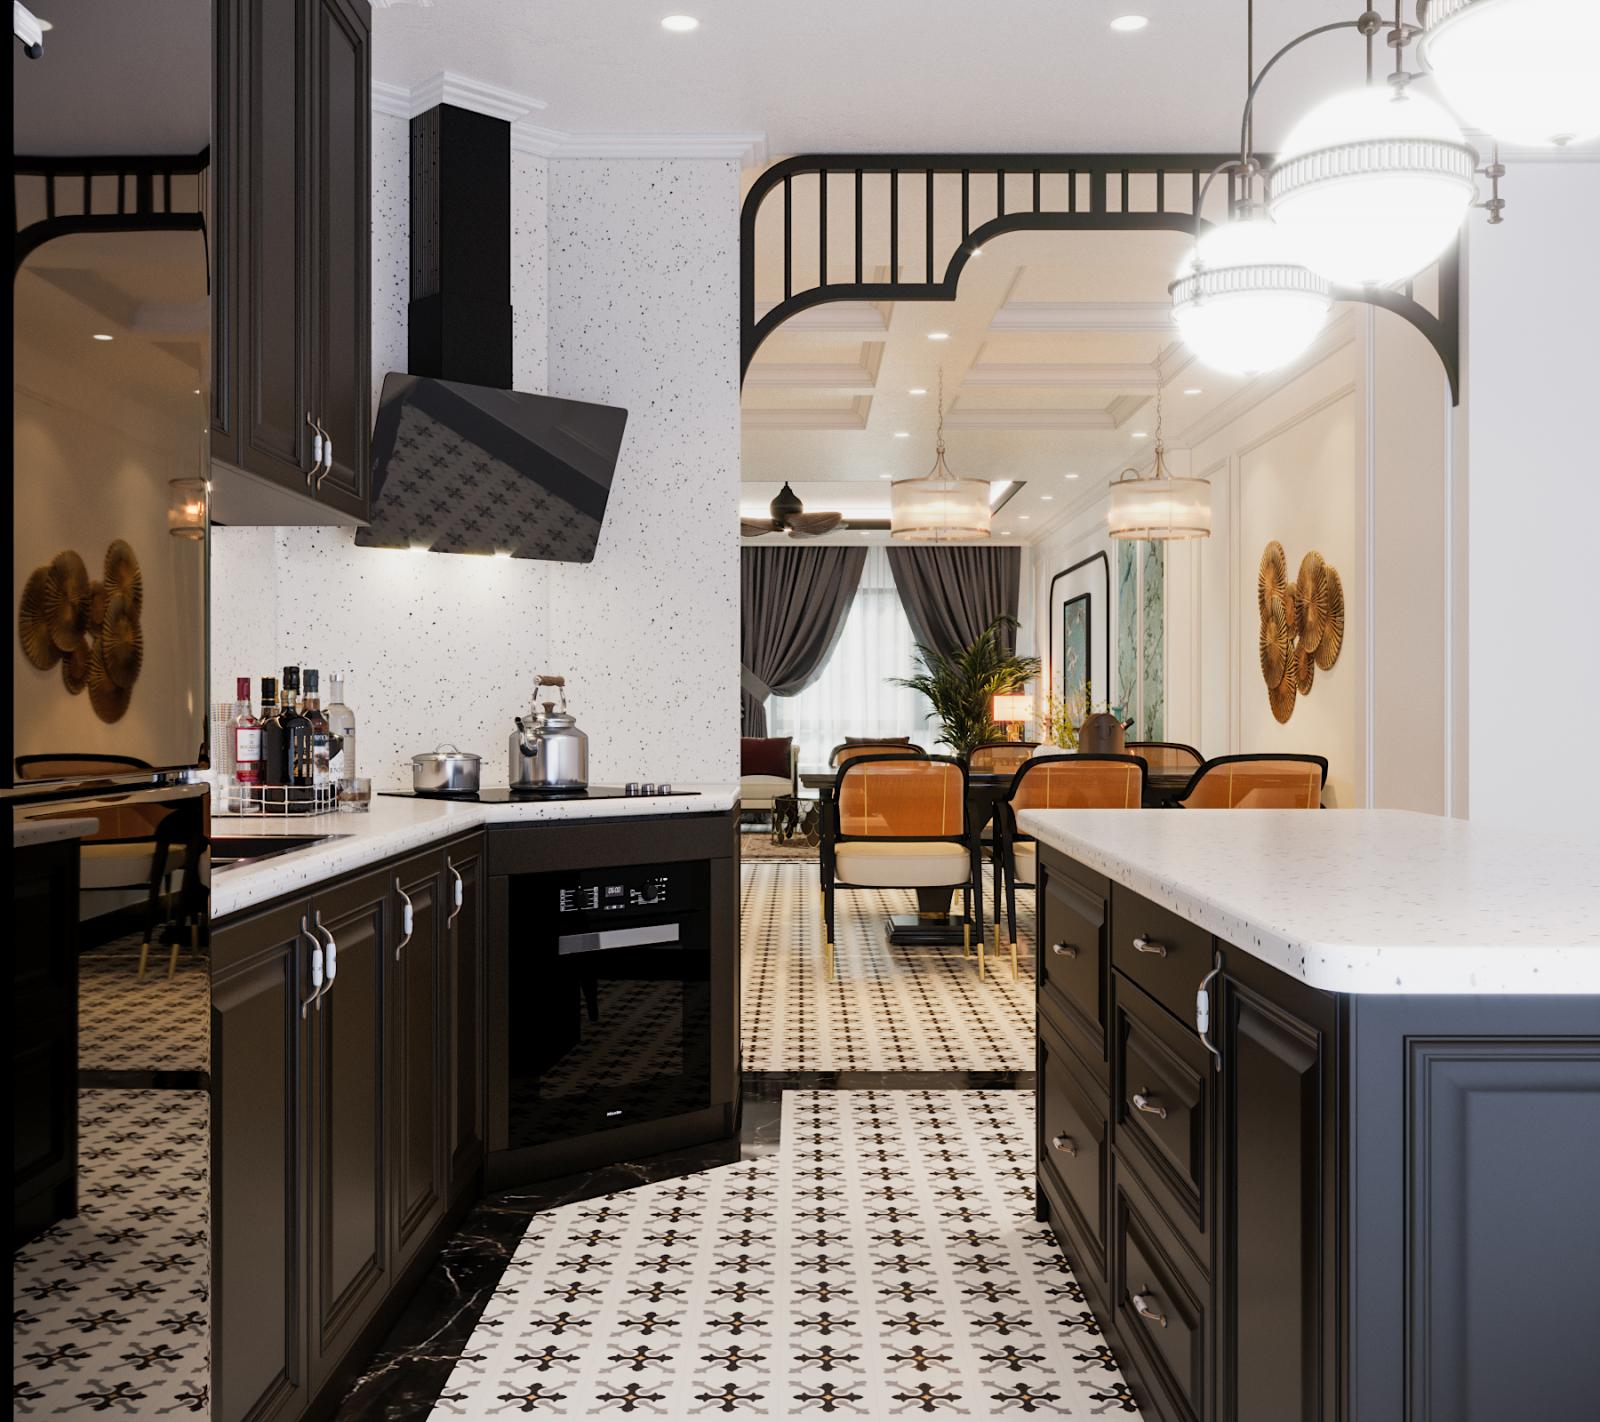 Phong cách Indochine 2024 cho phòng bếp - Sự kết hợp hoàn hảo giữa truyền thống và hiện đại sẽ mang đến cho bạn một phong cách Indochine đầy đặc trưng. Với những gam màu tươi sáng, những đường nét tinh tế và những sản phẩm đồ nội thất độc đáo, hình ảnh này chắc chắn sẽ khiến bạn muốn có ngay một phòng bếp như vậy.